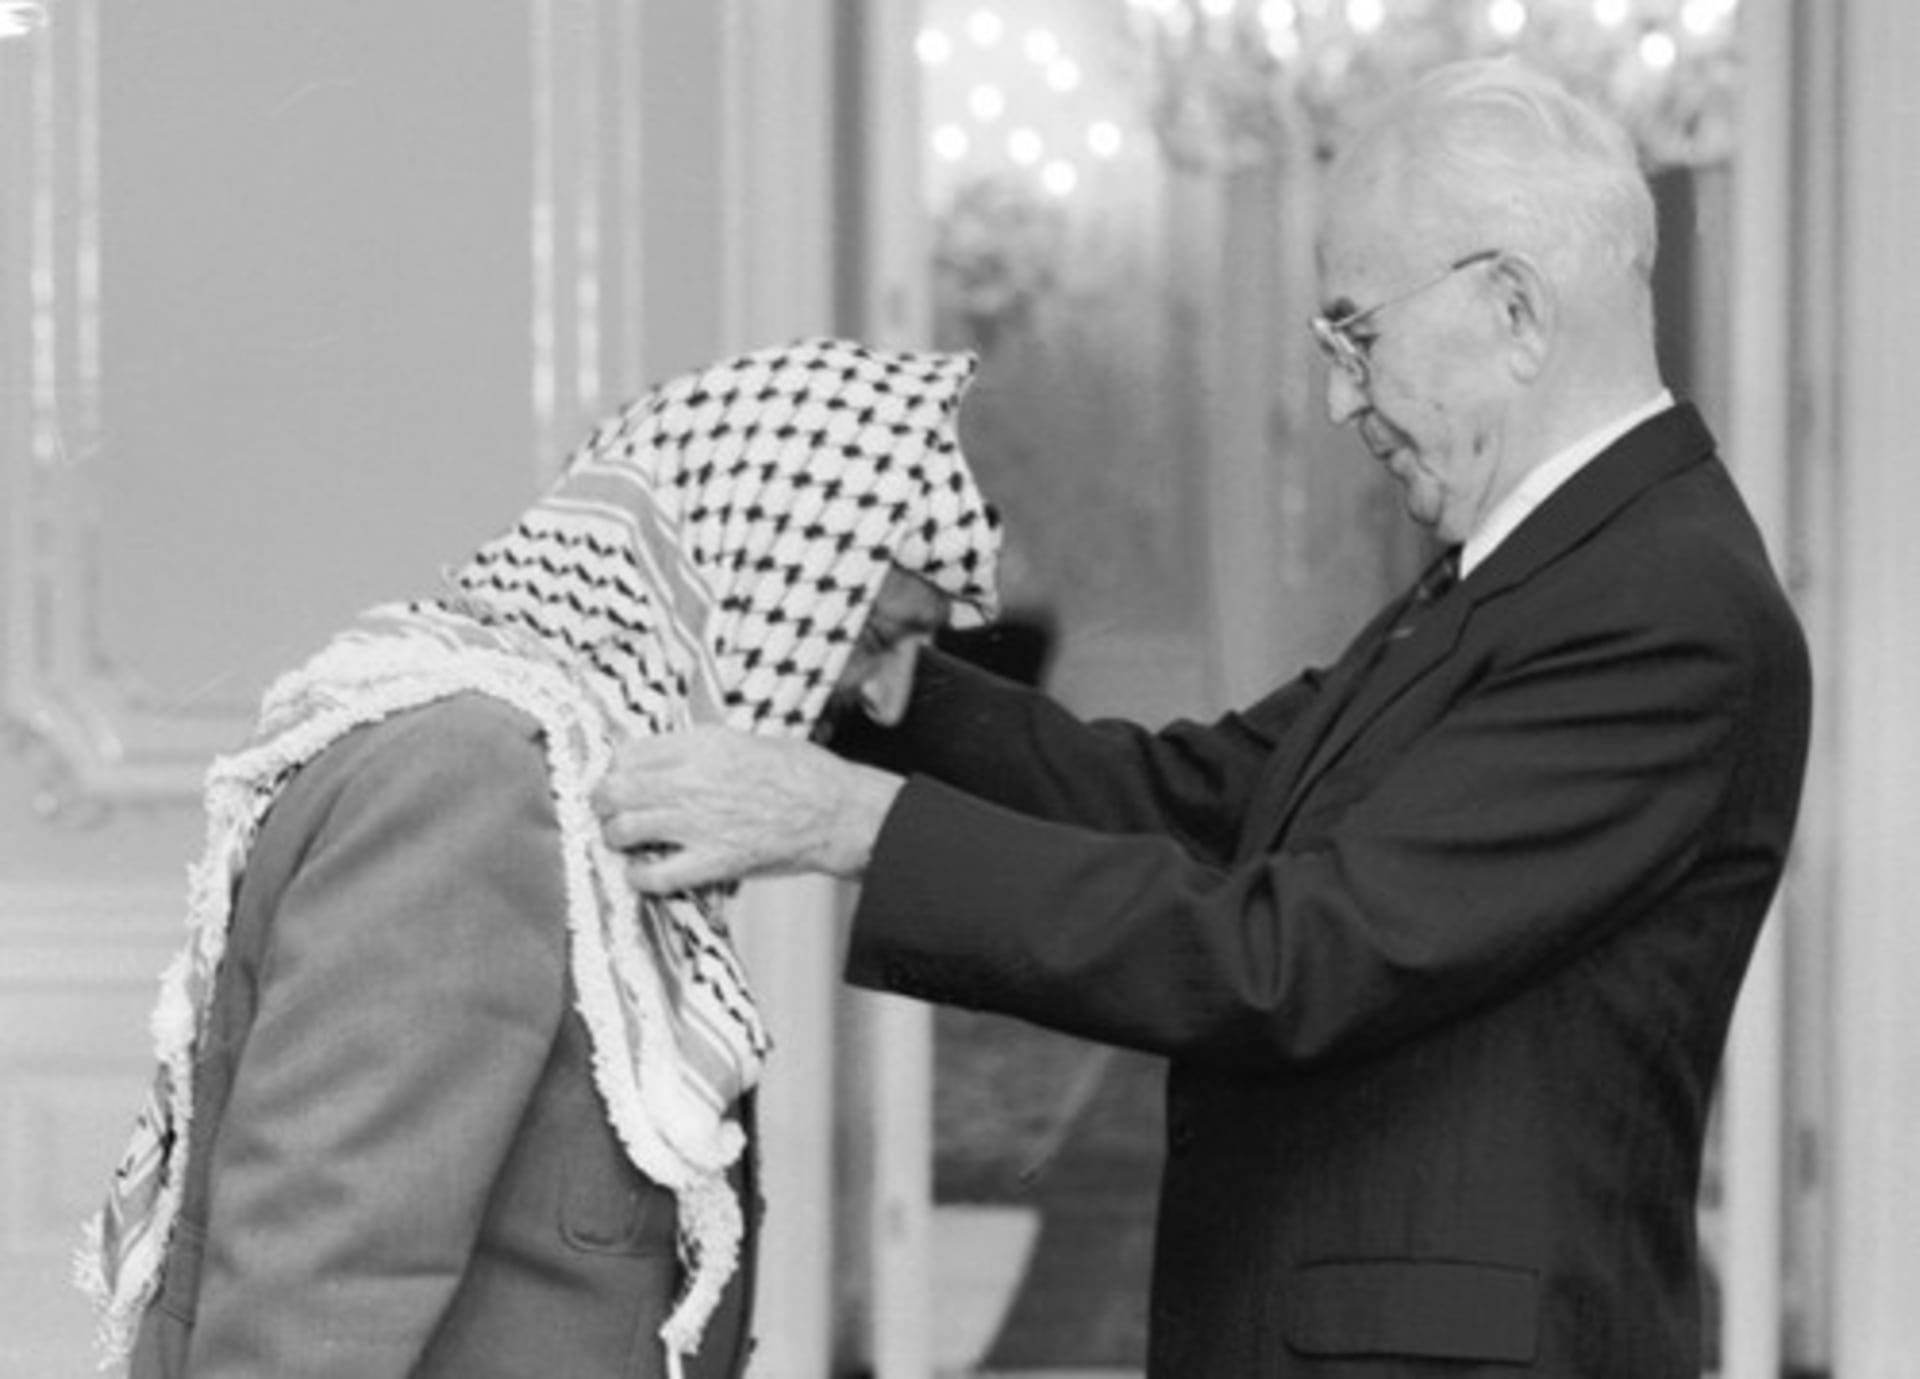 Návštěva Jásira Arafata v Praze, 18. října 1989. Do Československa tehdy přijel i Bassam Abu Sharif, podle amerického časopisu Time nejznámější tvář palestinského teroru. Prezident ČSSR Gustáv Husák (vpravo) předal na Pražském hradě předsedovi výkonného výboru OOP Jásiru Arafatovi Československý řád Bílého lva I. třídy.